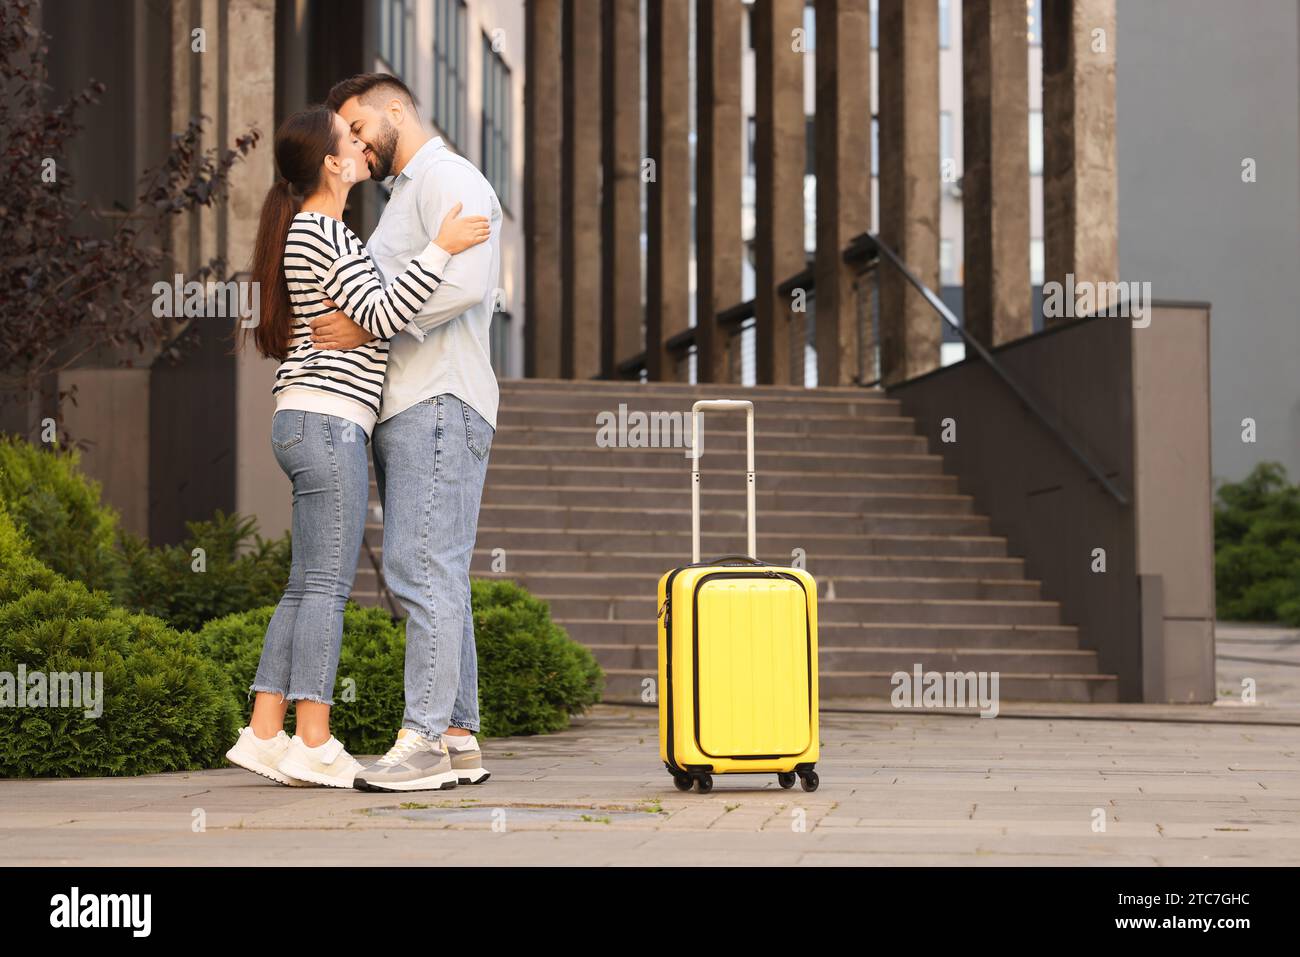 Relation longue distance. Beau jeune couple s'embrassant et valise près du bâtiment à l'extérieur Banque D'Images